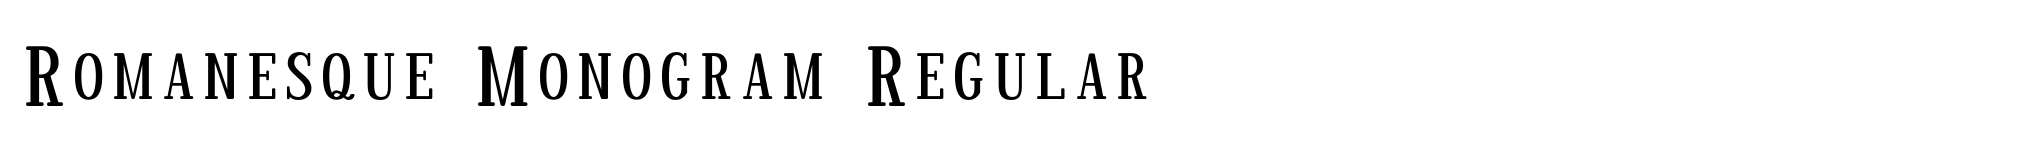 Romanesque Monogram Regular image